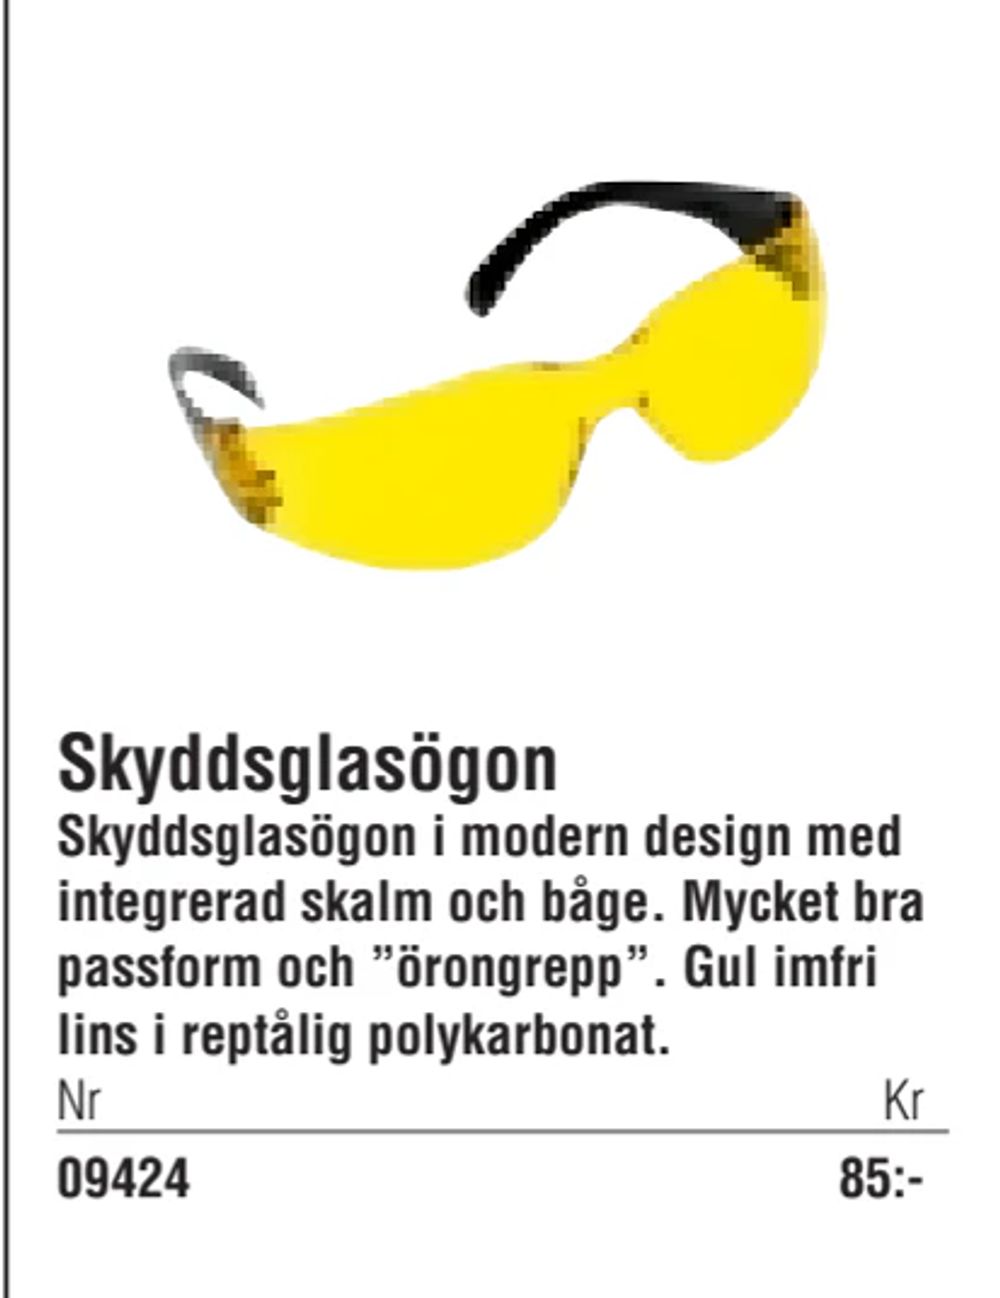 Erbjudanden på Skyddsglasögon från Erlandsons Brygga för 85 kr